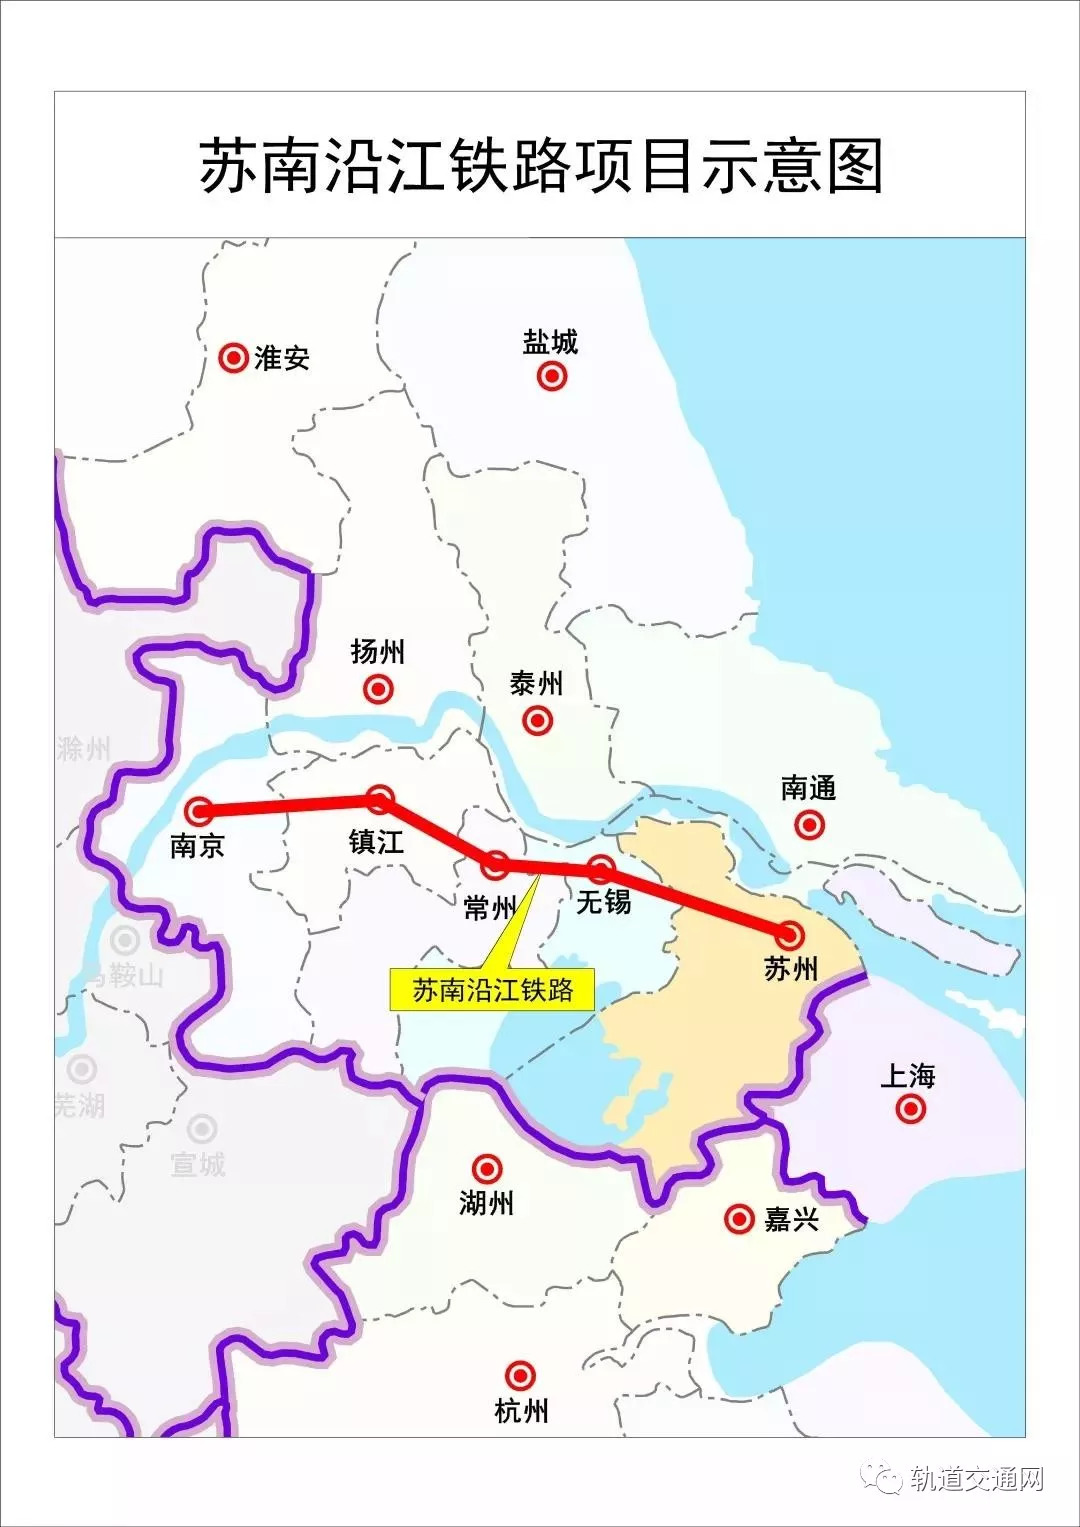 江苏南沿江铁路正式获批,9月底前开工,工期42